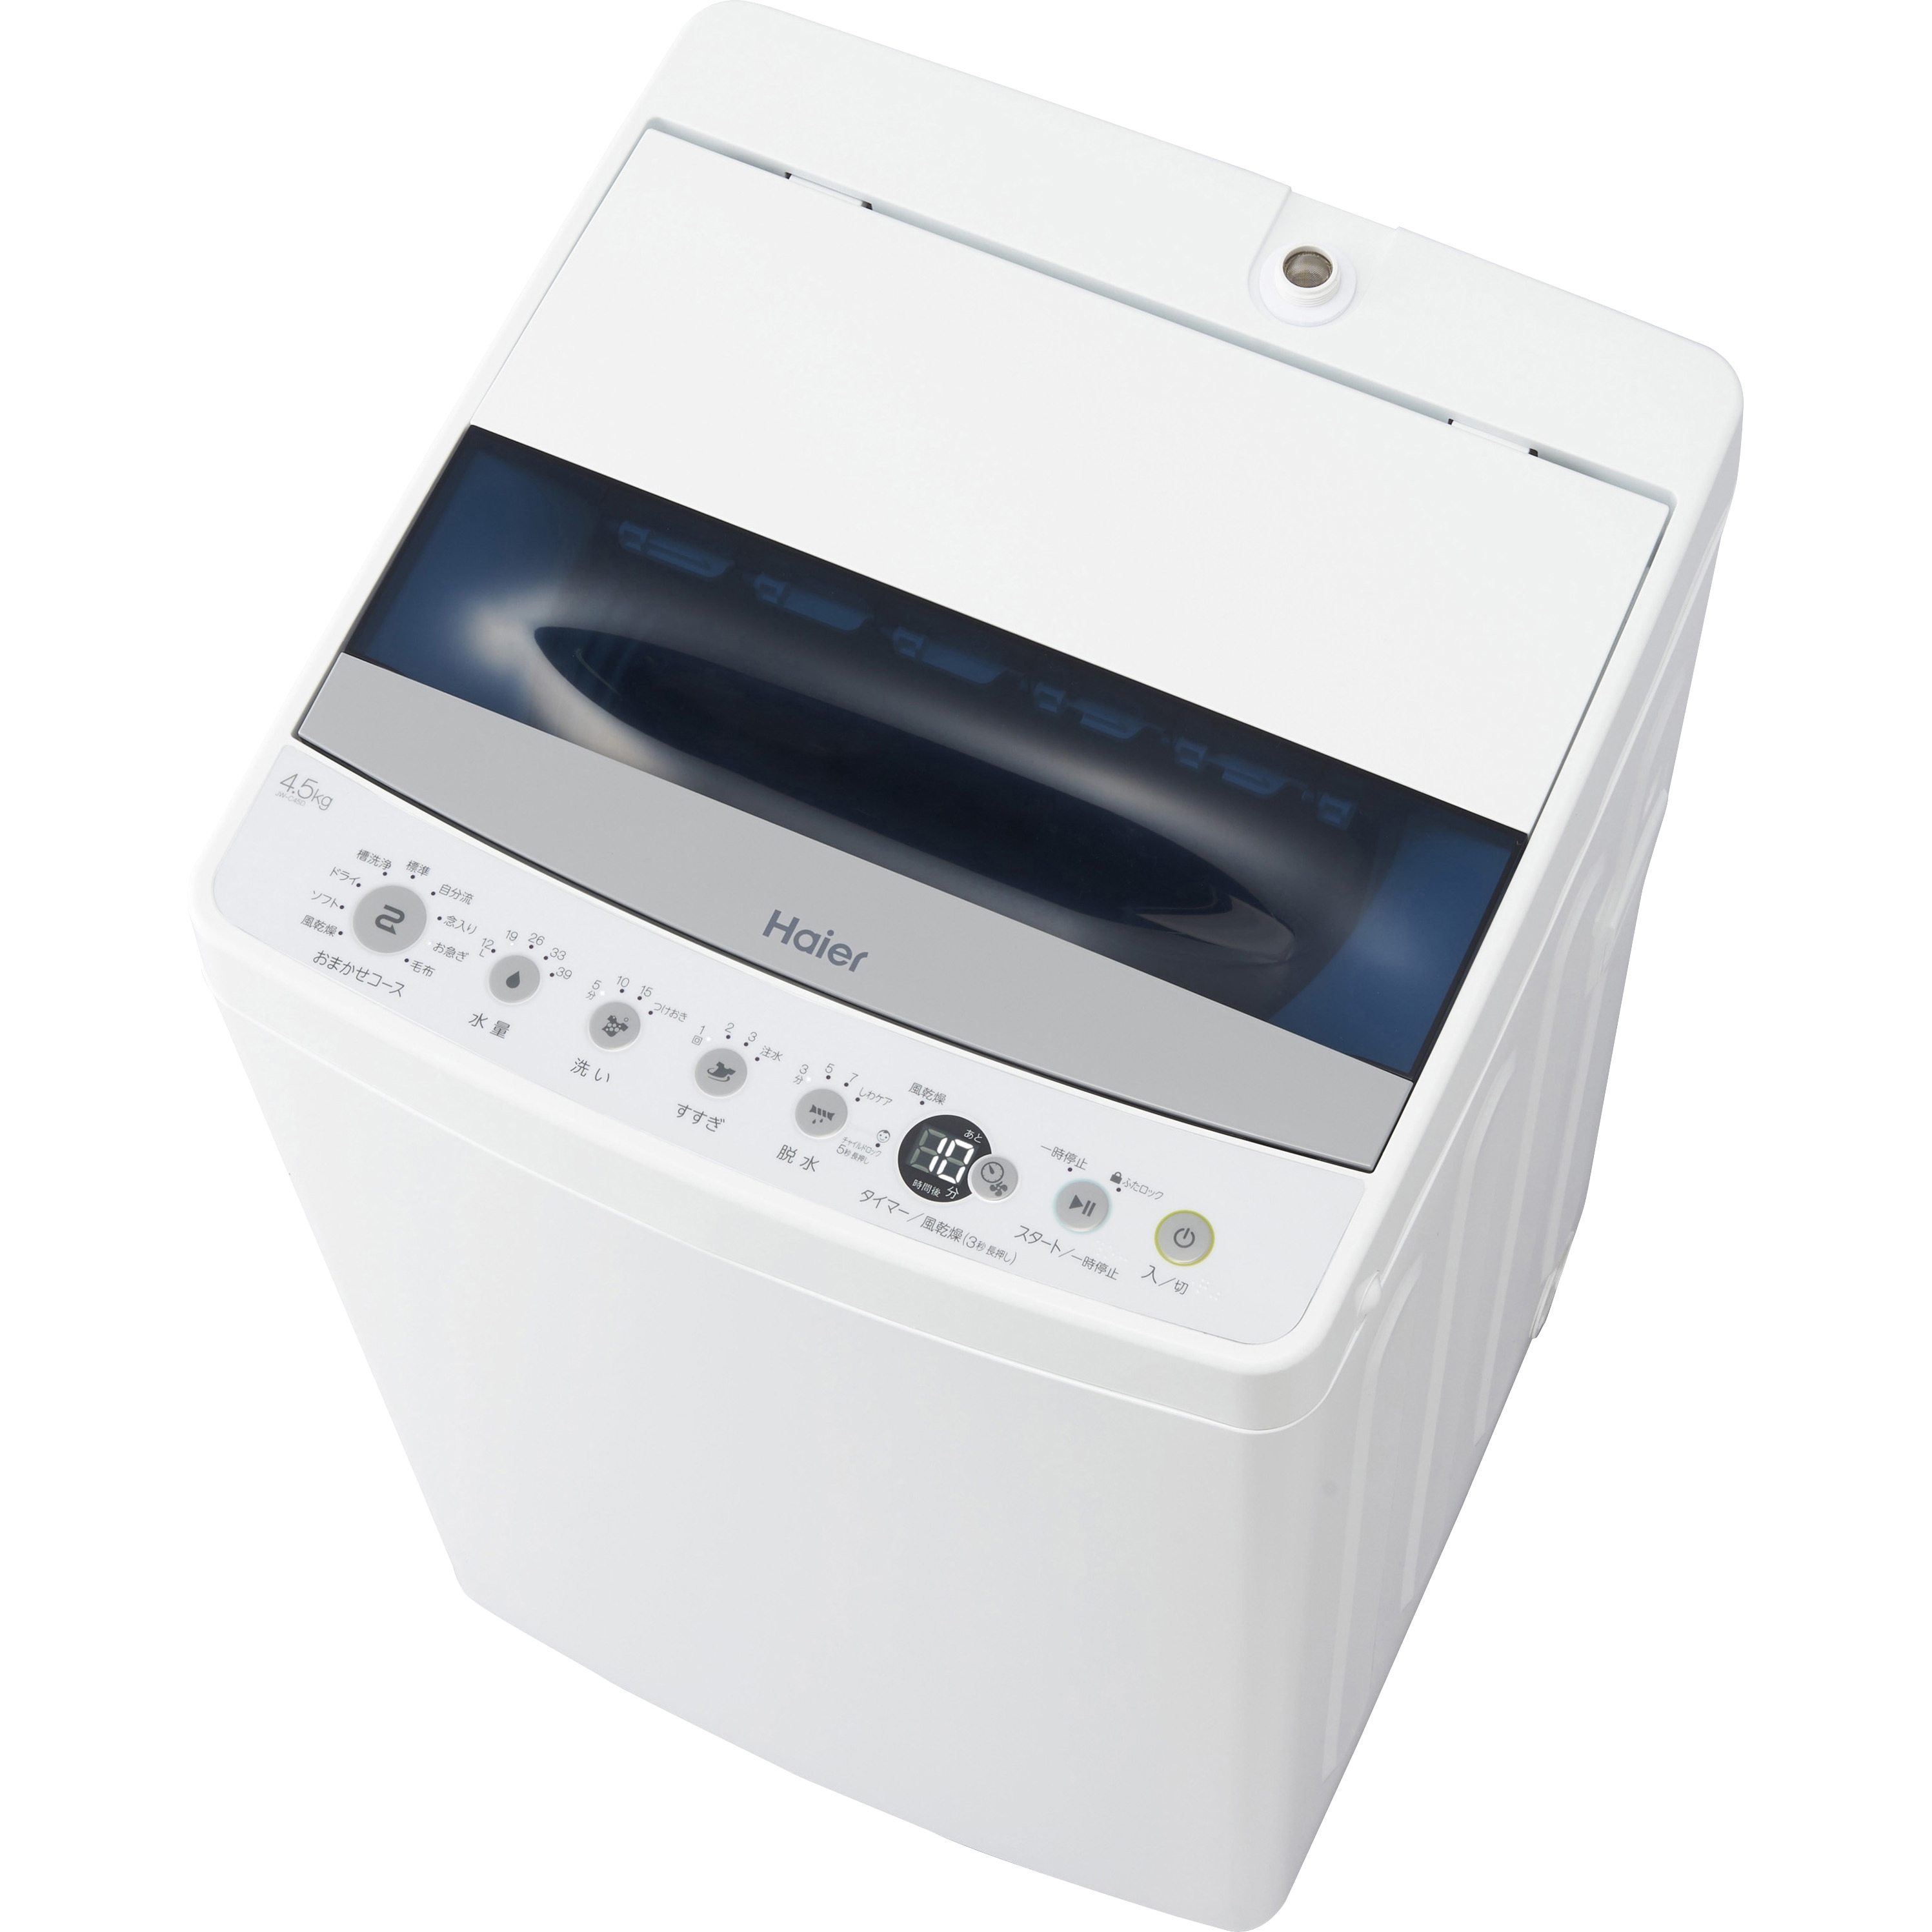 経典ブランド 美咲様専用ハイアール 4.5キロ 洗濯機 Haier JW-C45D(W) - 洗濯機 - www.qiraatafrican.com